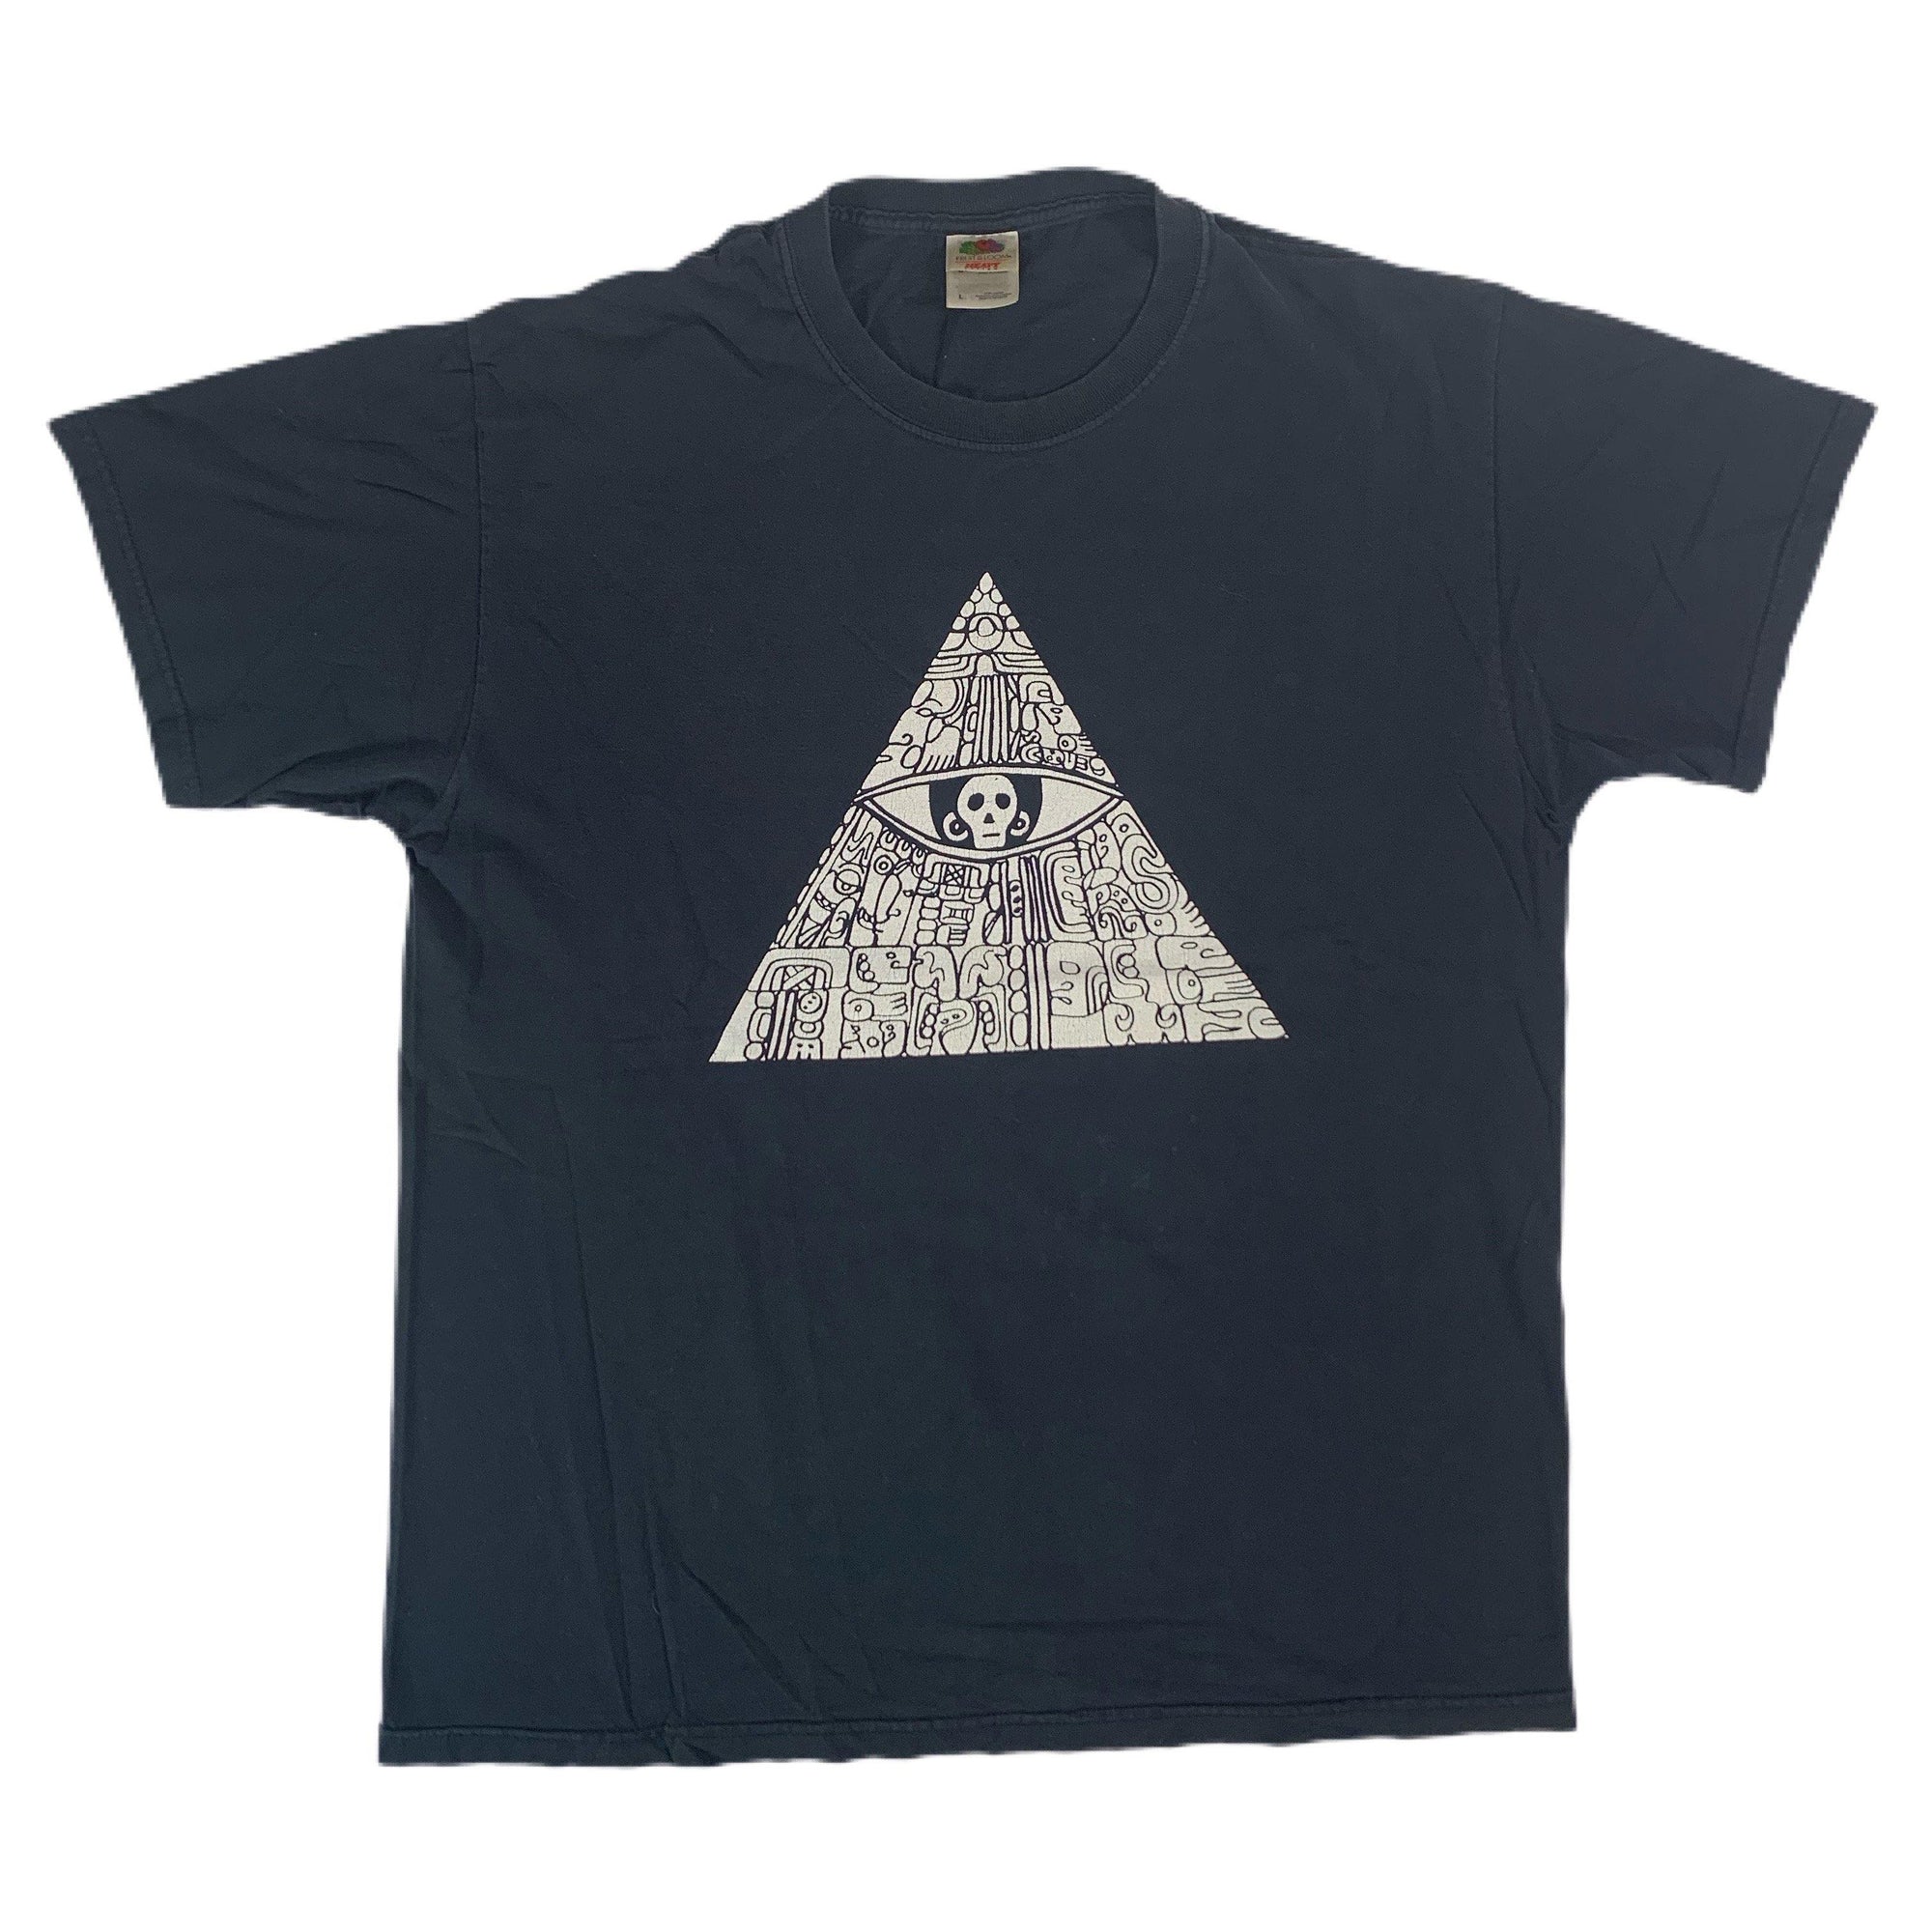 Vintage Original Acid Mothers Temple & The Melting Paraiso U.F.O Last Tour T shirt Front